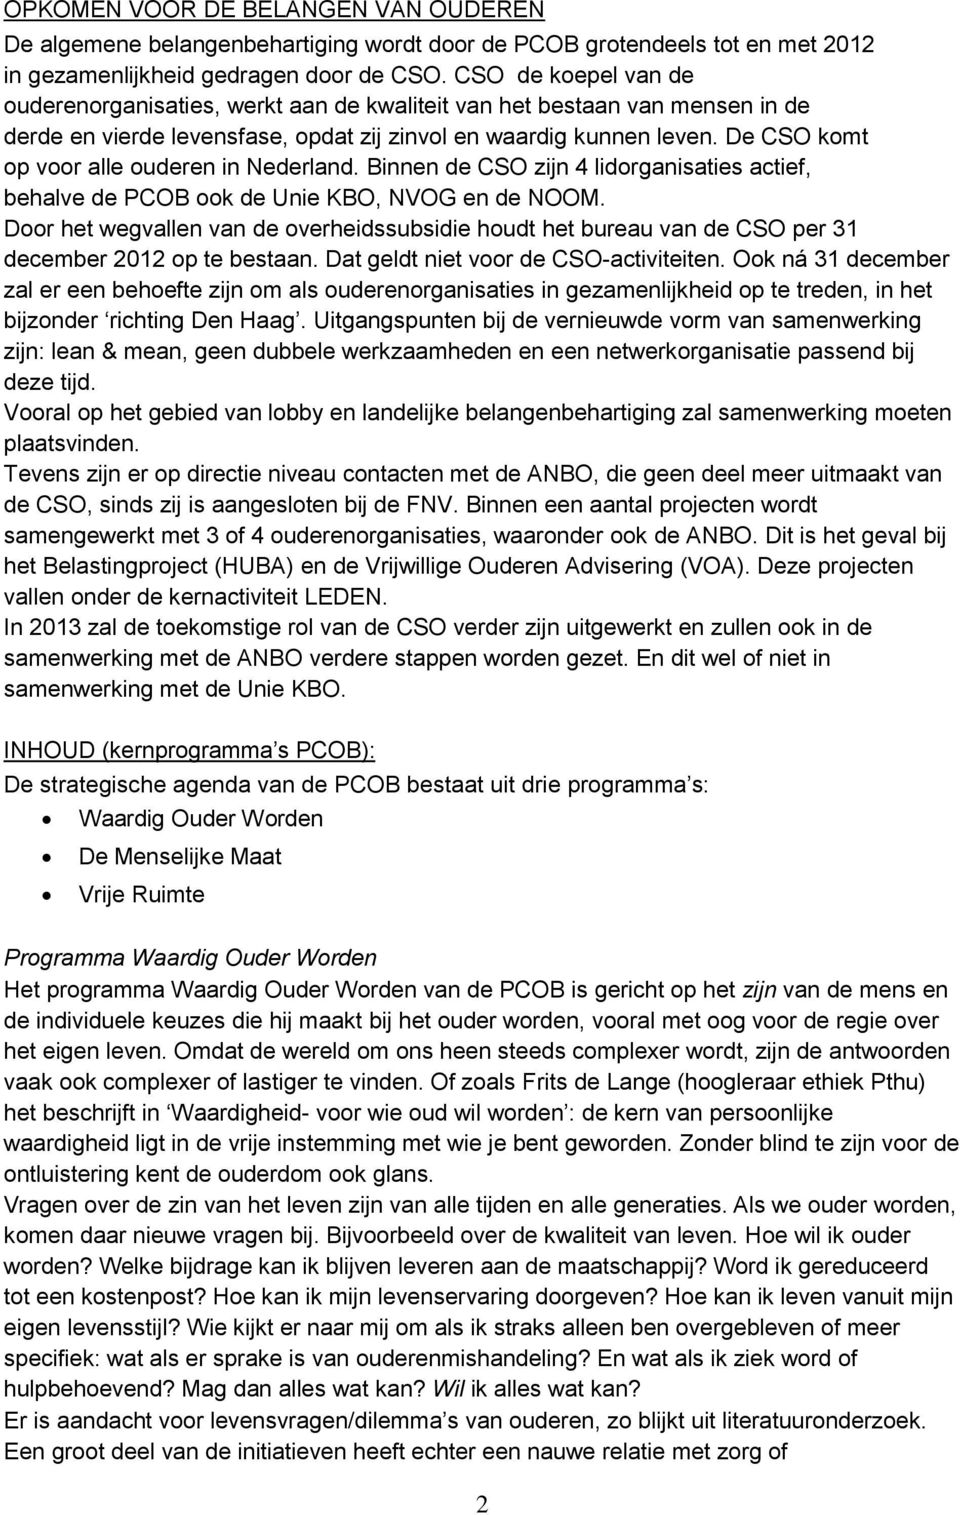 De CSO komt op voor alle ouderen in Nederland. Binnen de CSO zijn 4 lidorganisaties actief, behalve de PCOB ook de Unie KBO, NVOG en de NOOM.